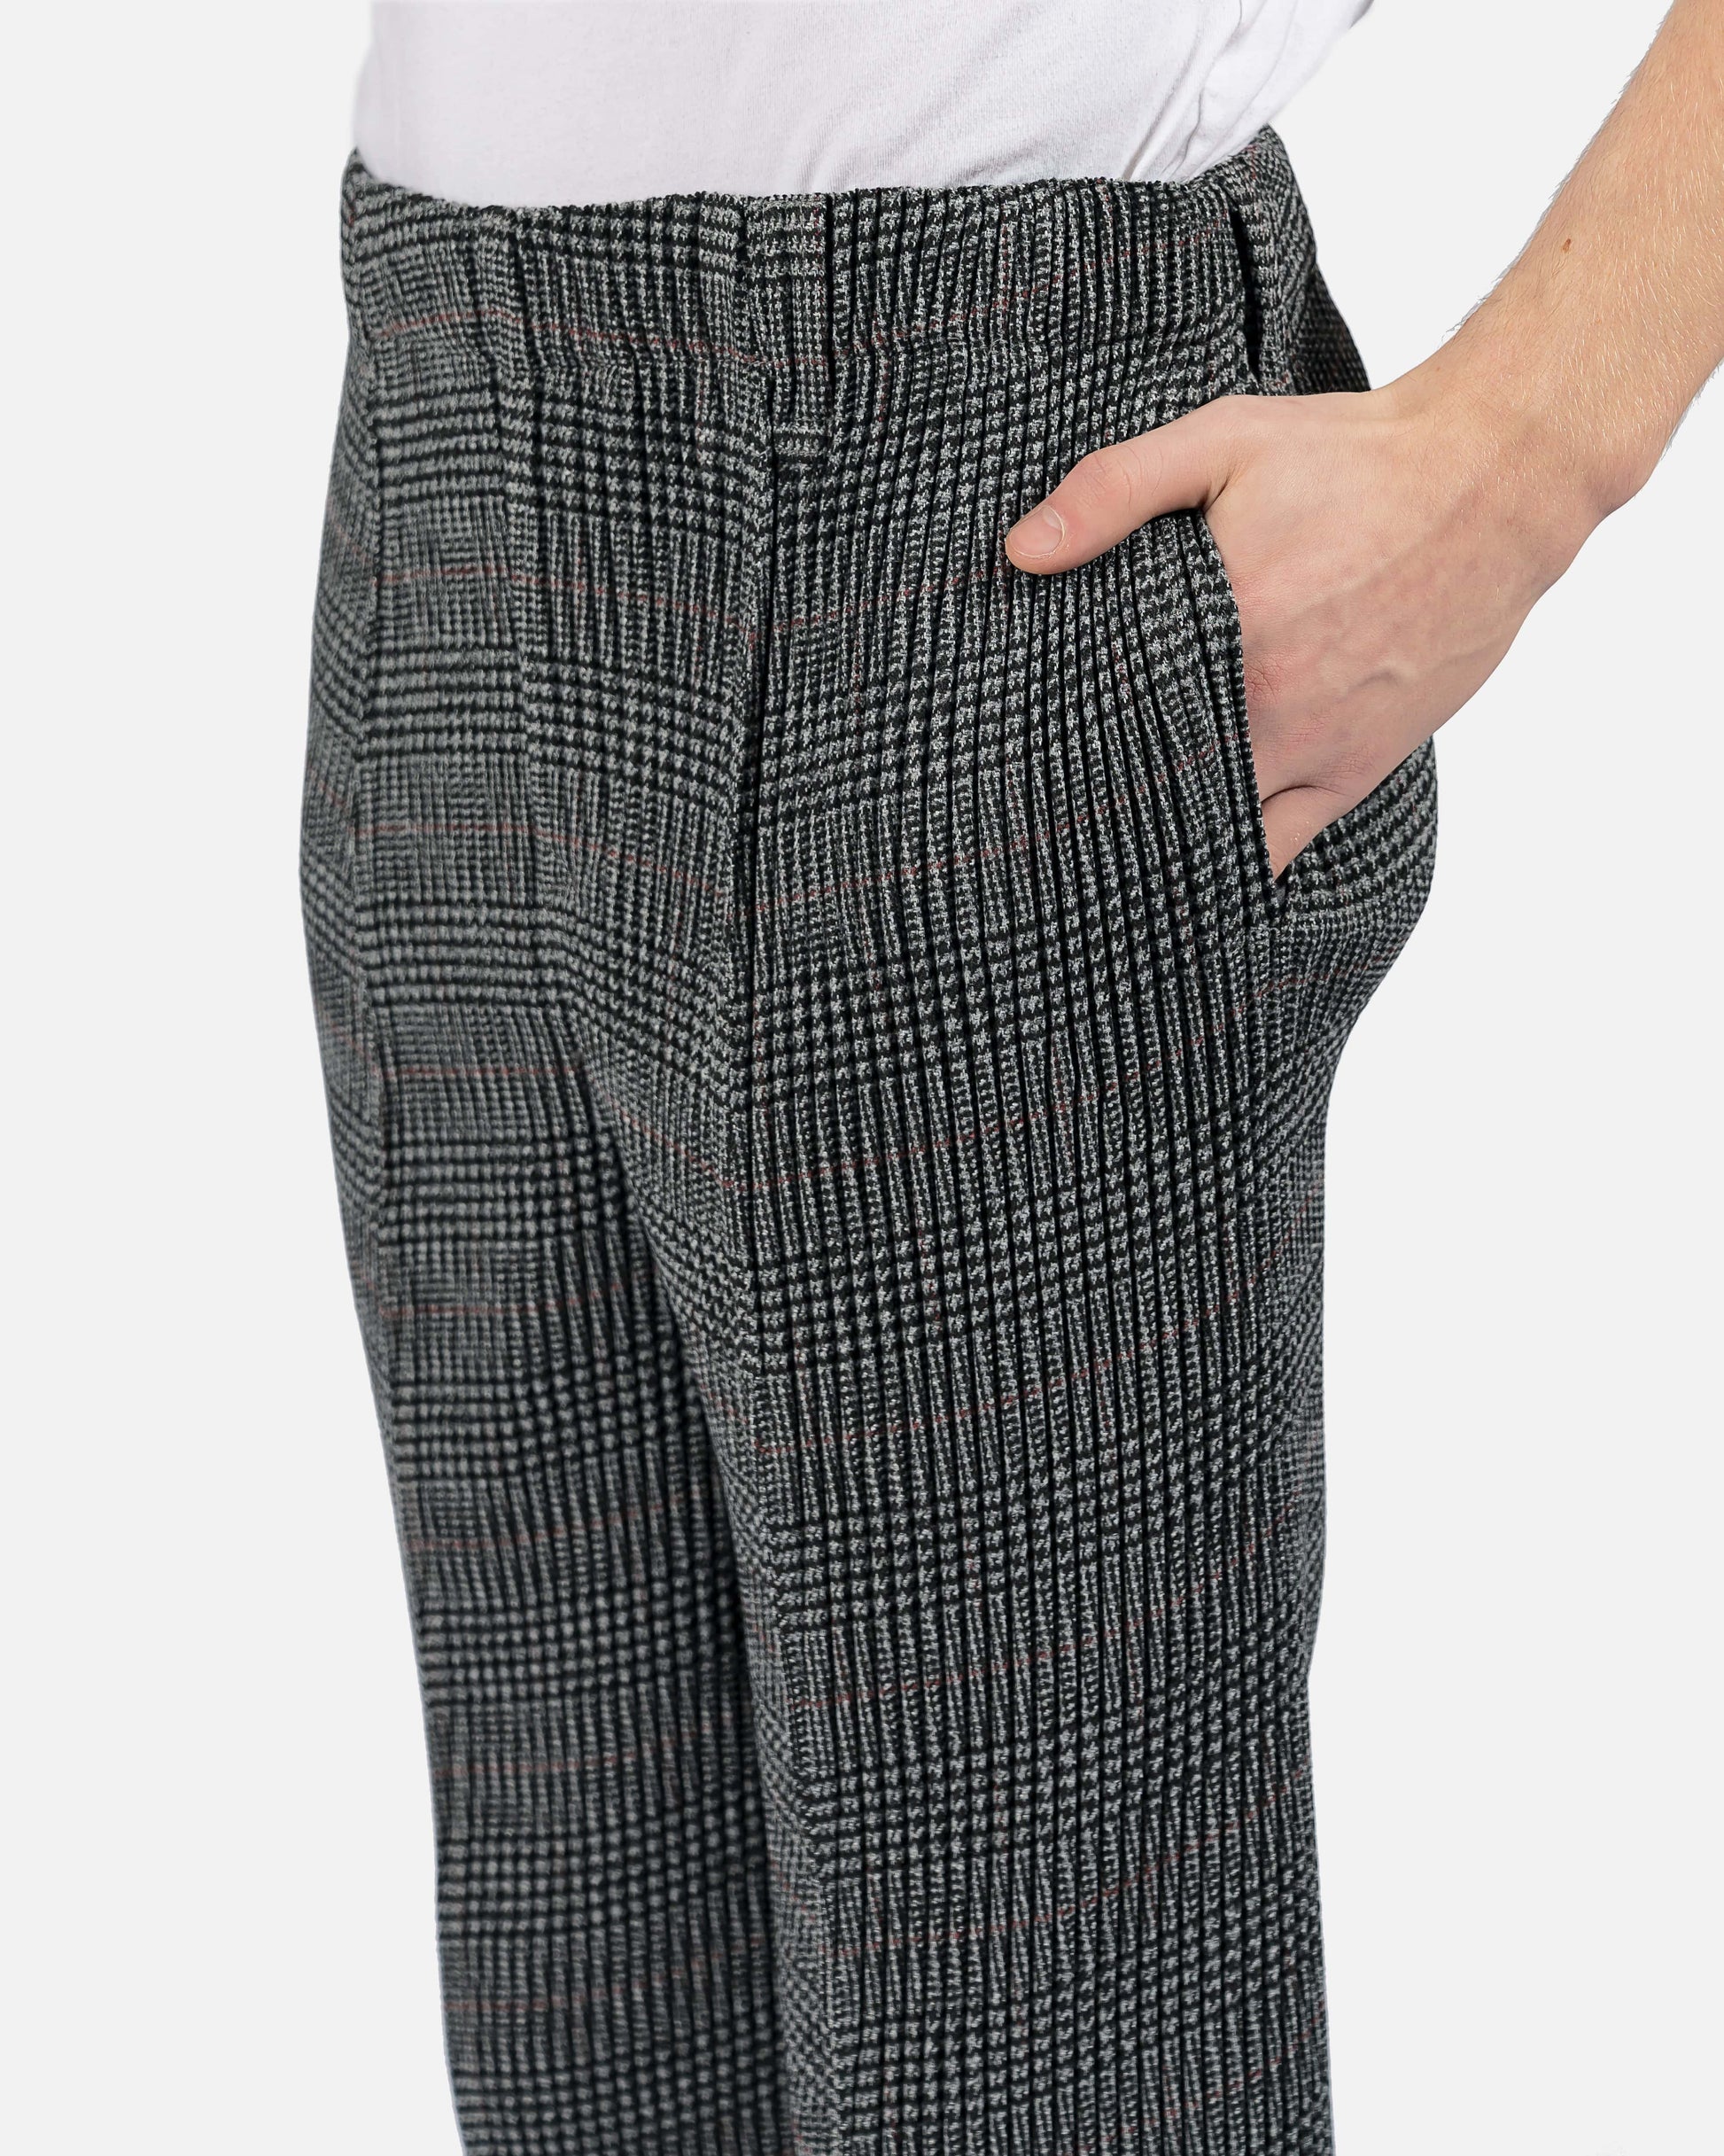 Homme Plissé Issey Miyake Men's Pants Tweed Pleats Trousers in Grey